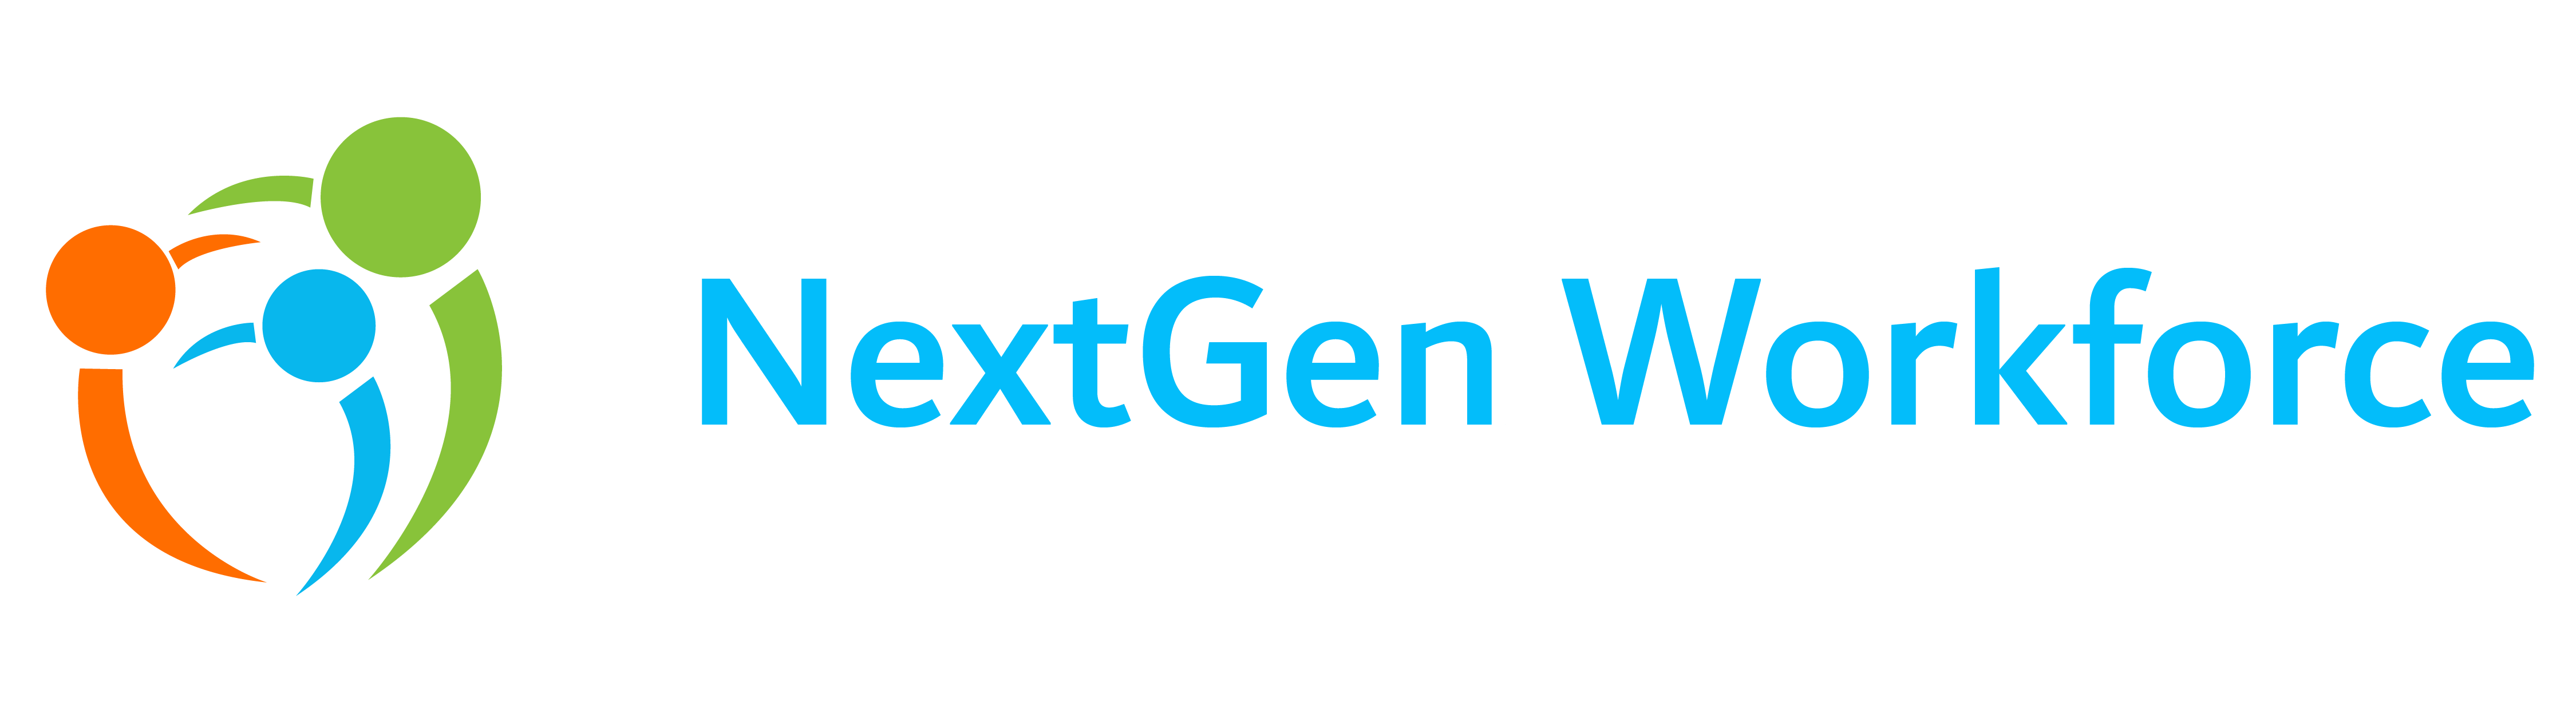 NextGen Workforce